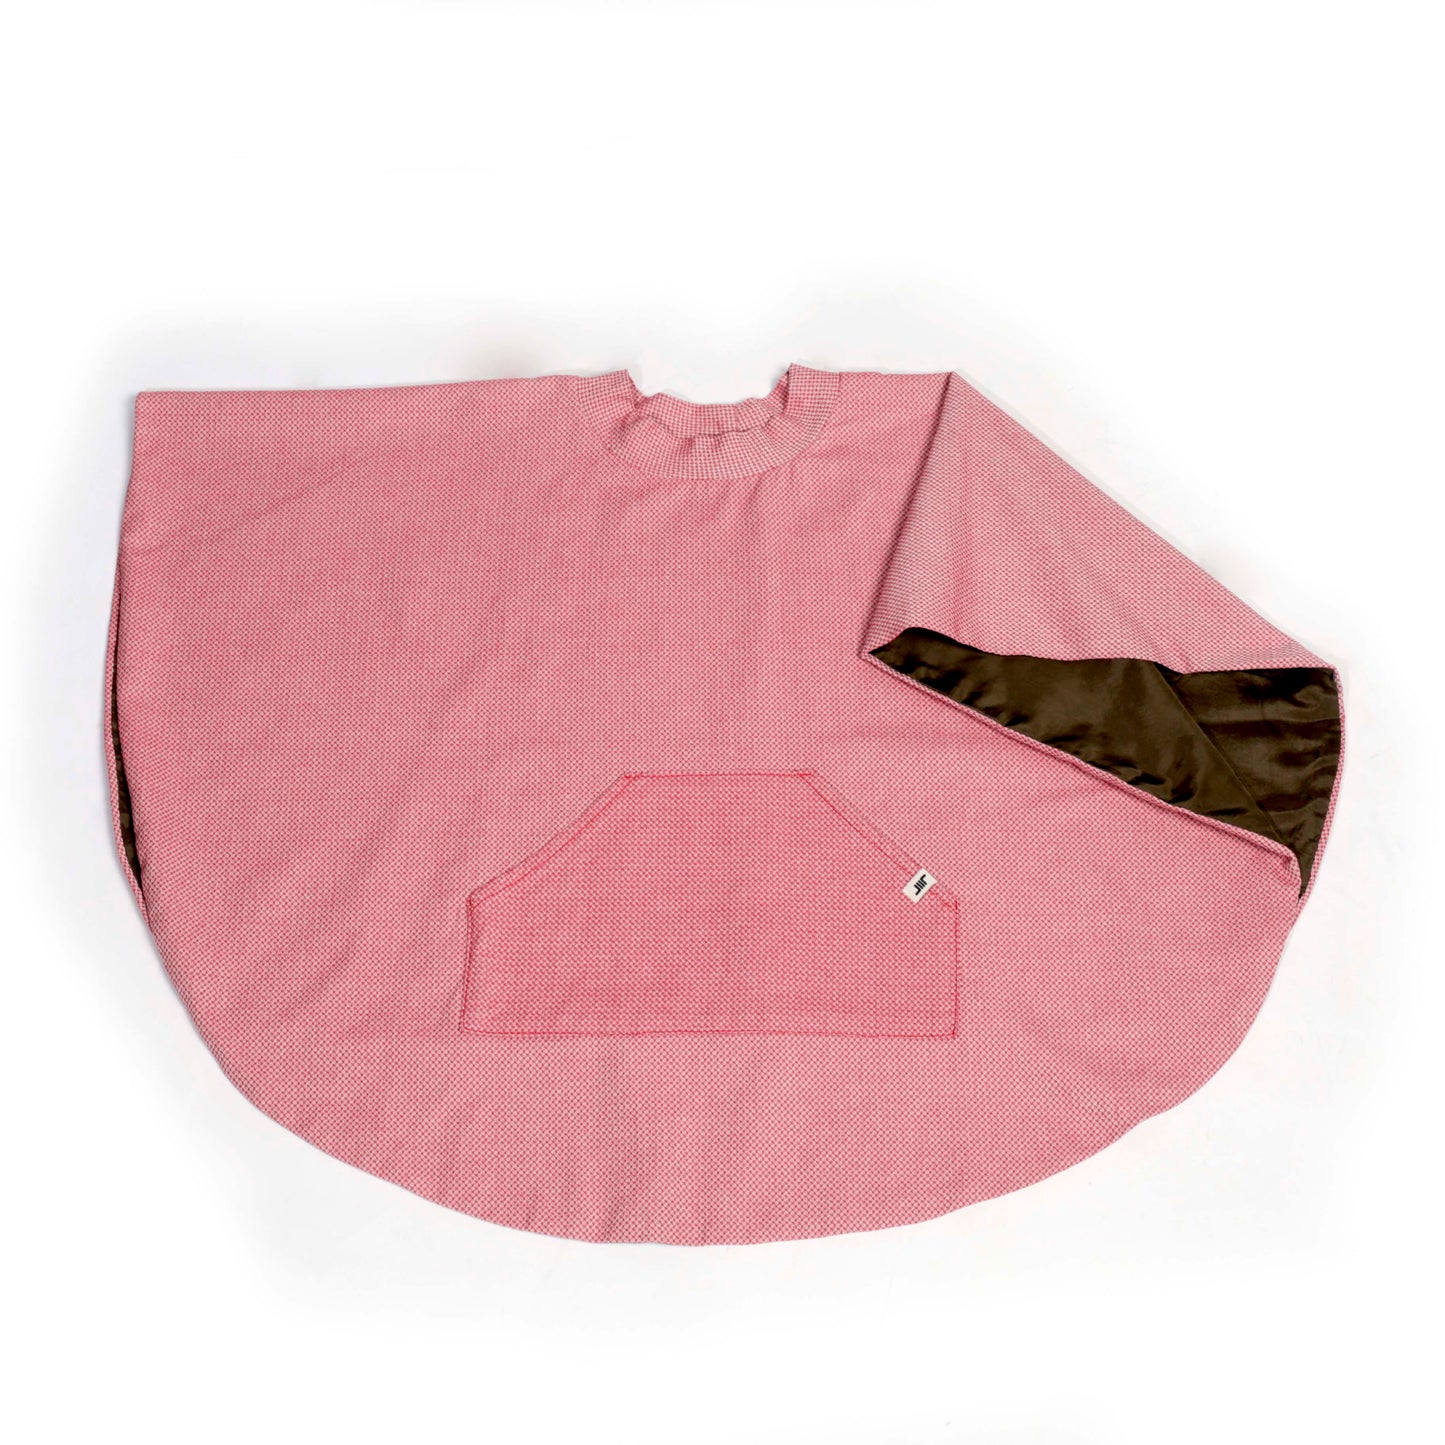 Capa OLIVIA en color rosa 100% algodón